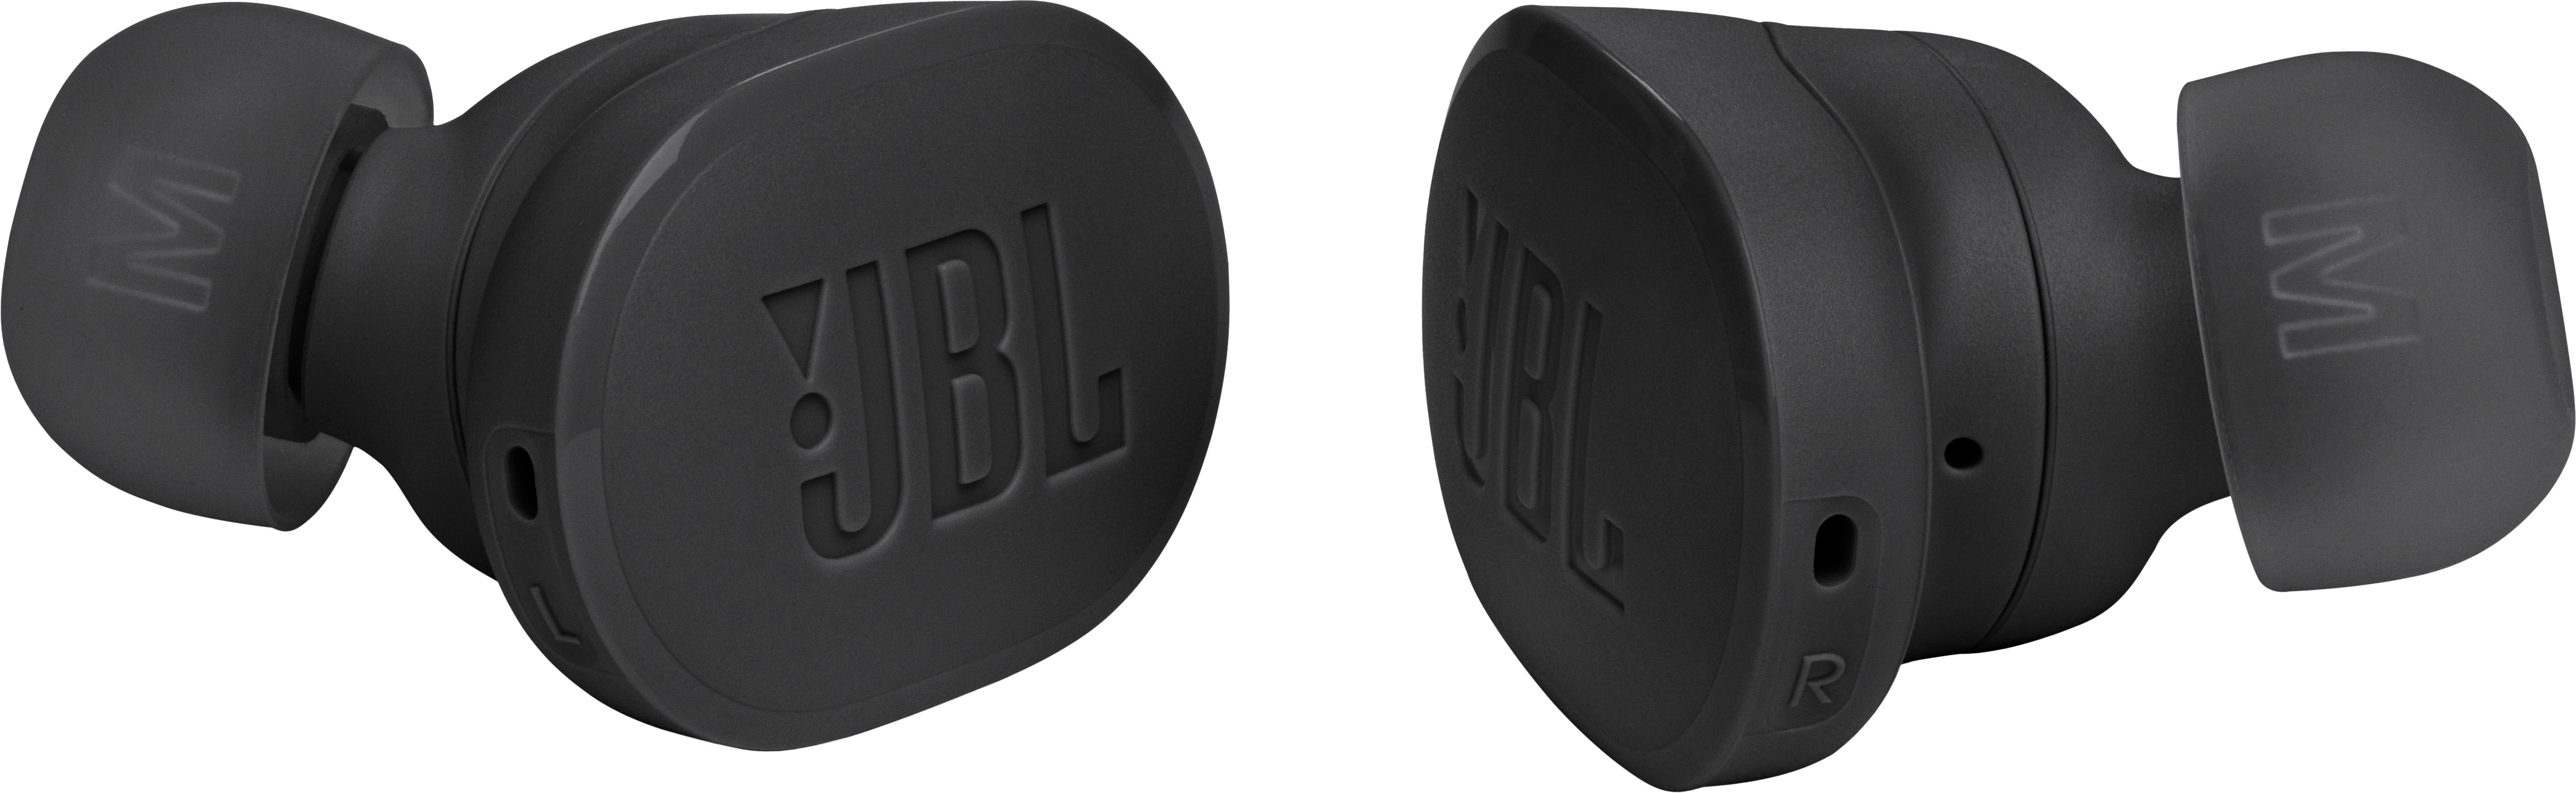 Tune - True JBL Cancelling Best Noise JBLTBUDSBLKAM Black Wireless Earbuds Buds Buy